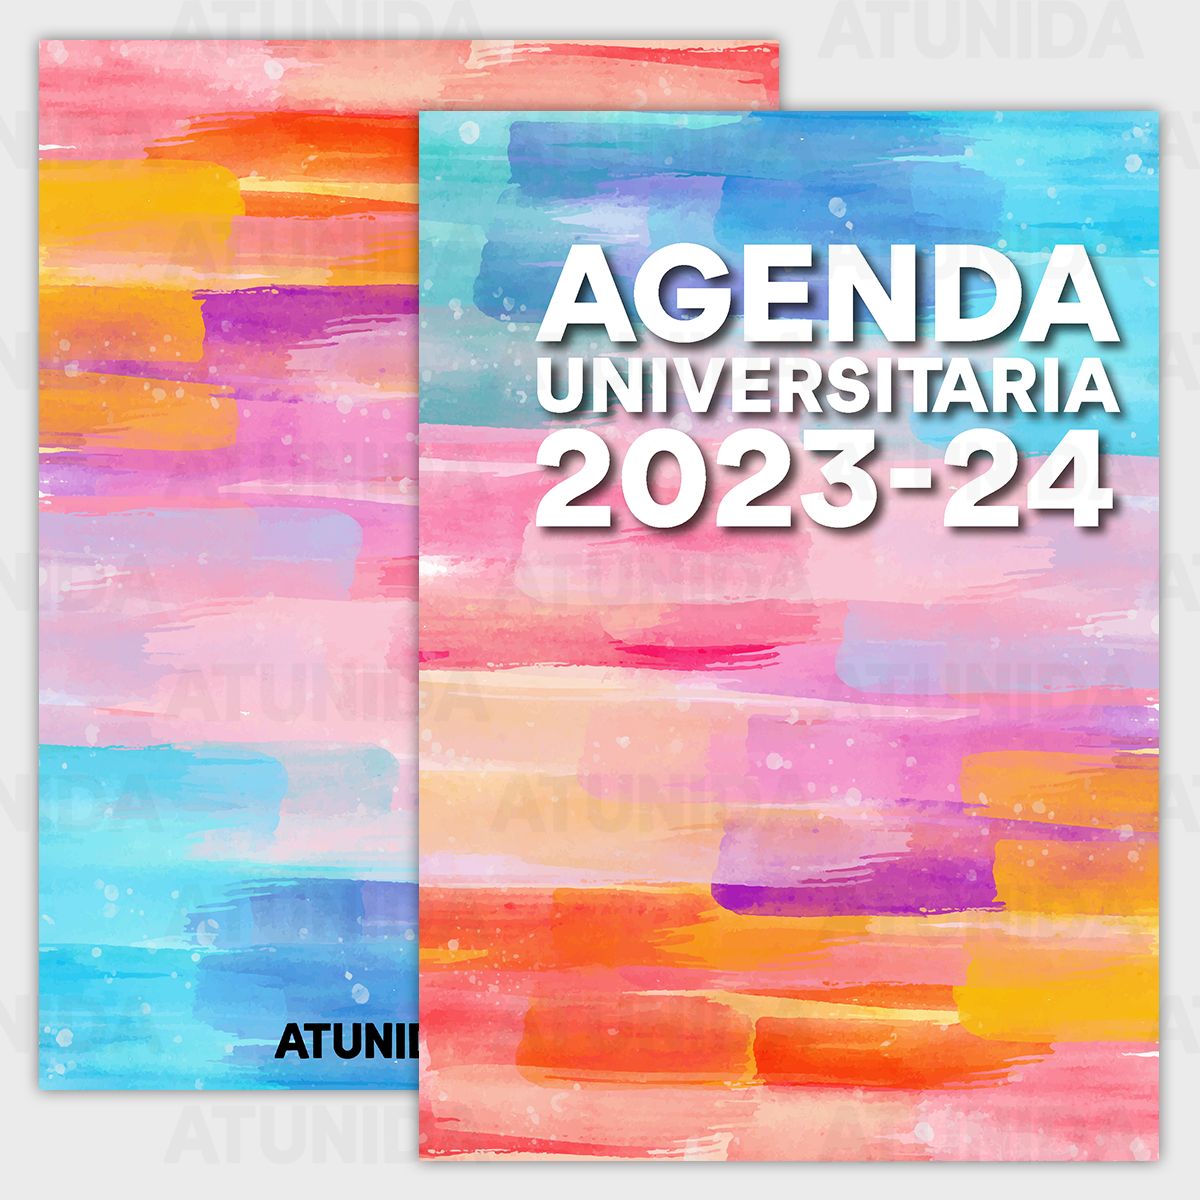 Agenda Escolar University 2023-2024 (+18 años) en PDF imprimible - ATUNIDA